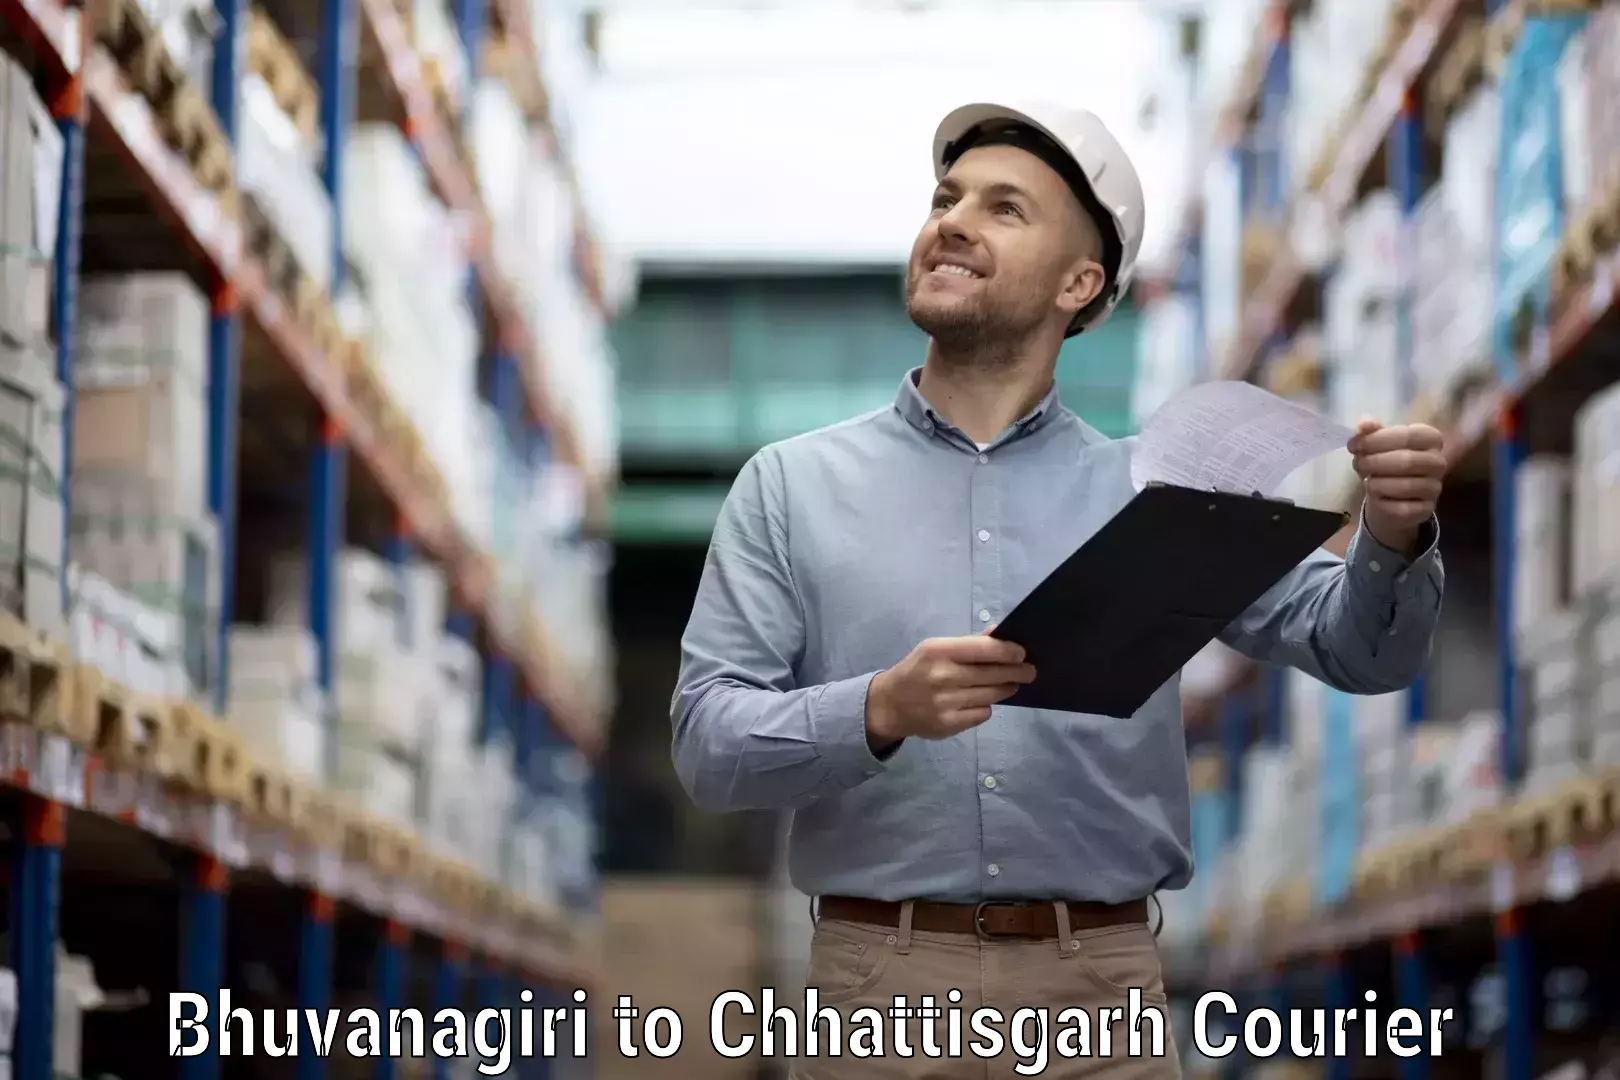 Customer-oriented courier services in Bhuvanagiri to Patna Chhattisgarh